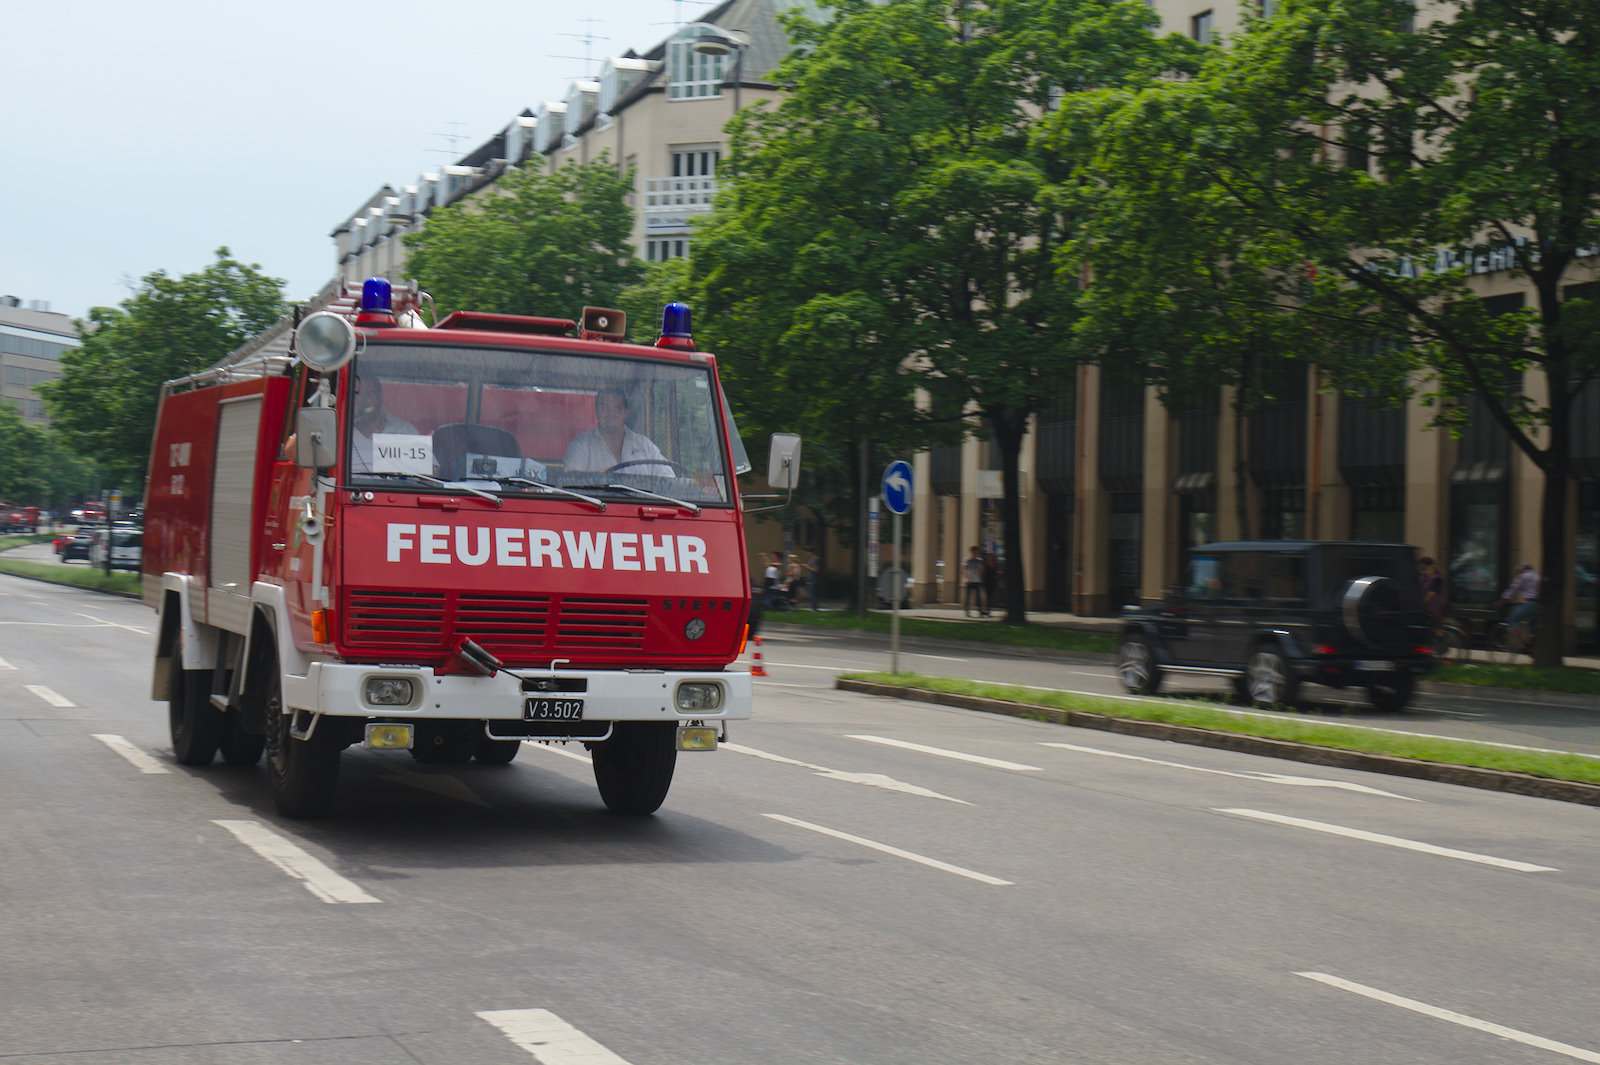 volunteer fire department11 150 Years Volunteer Fire Department in Munich